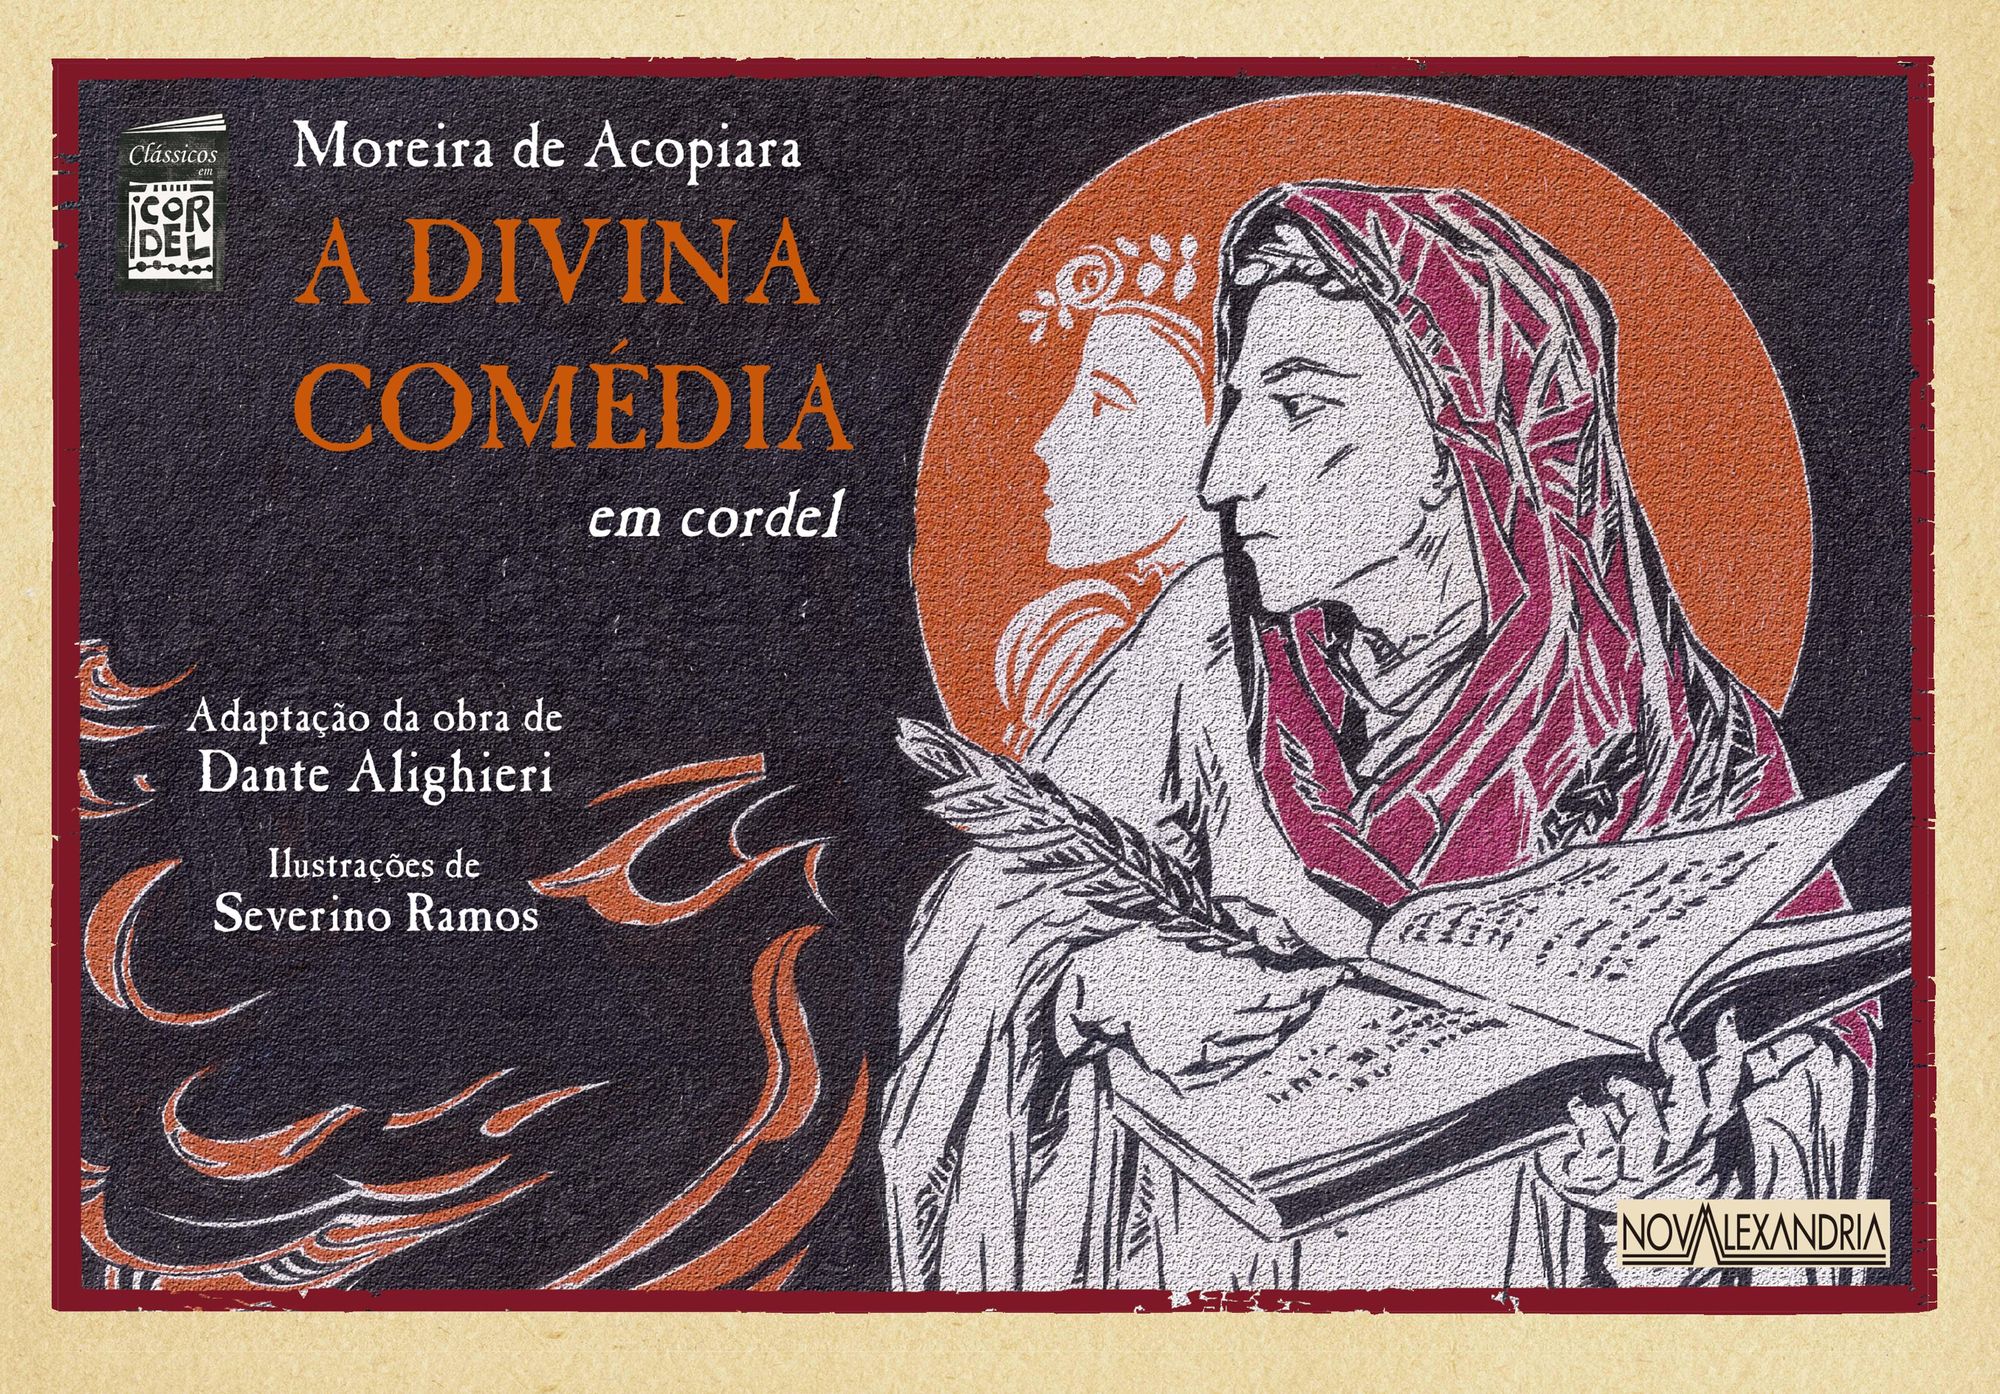 Dante & a Divina Comédia